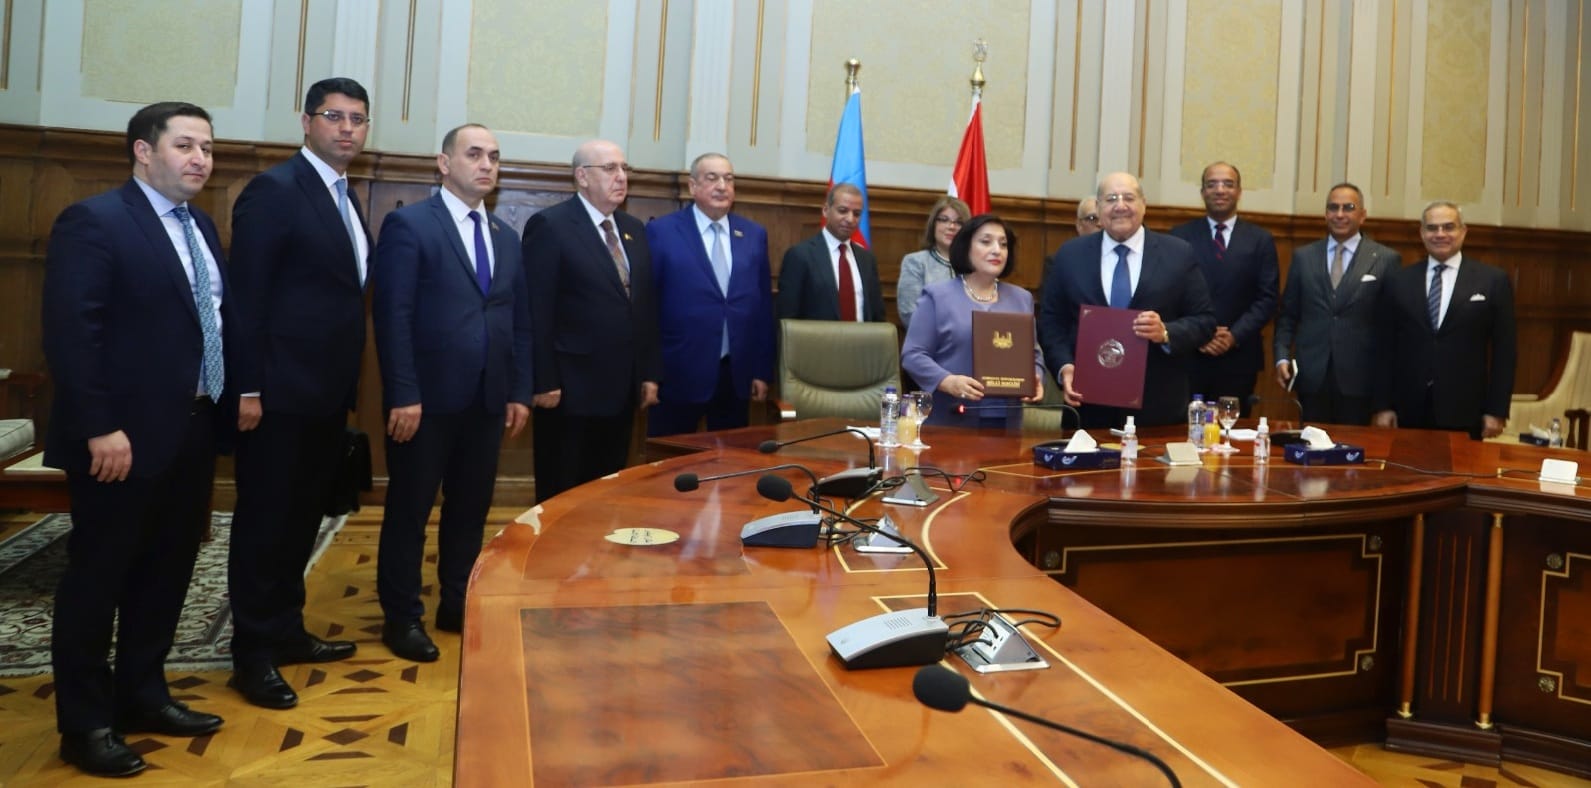  يستقبل رئيسة المجلس الوطني لجمهورية اذربيحان (7)